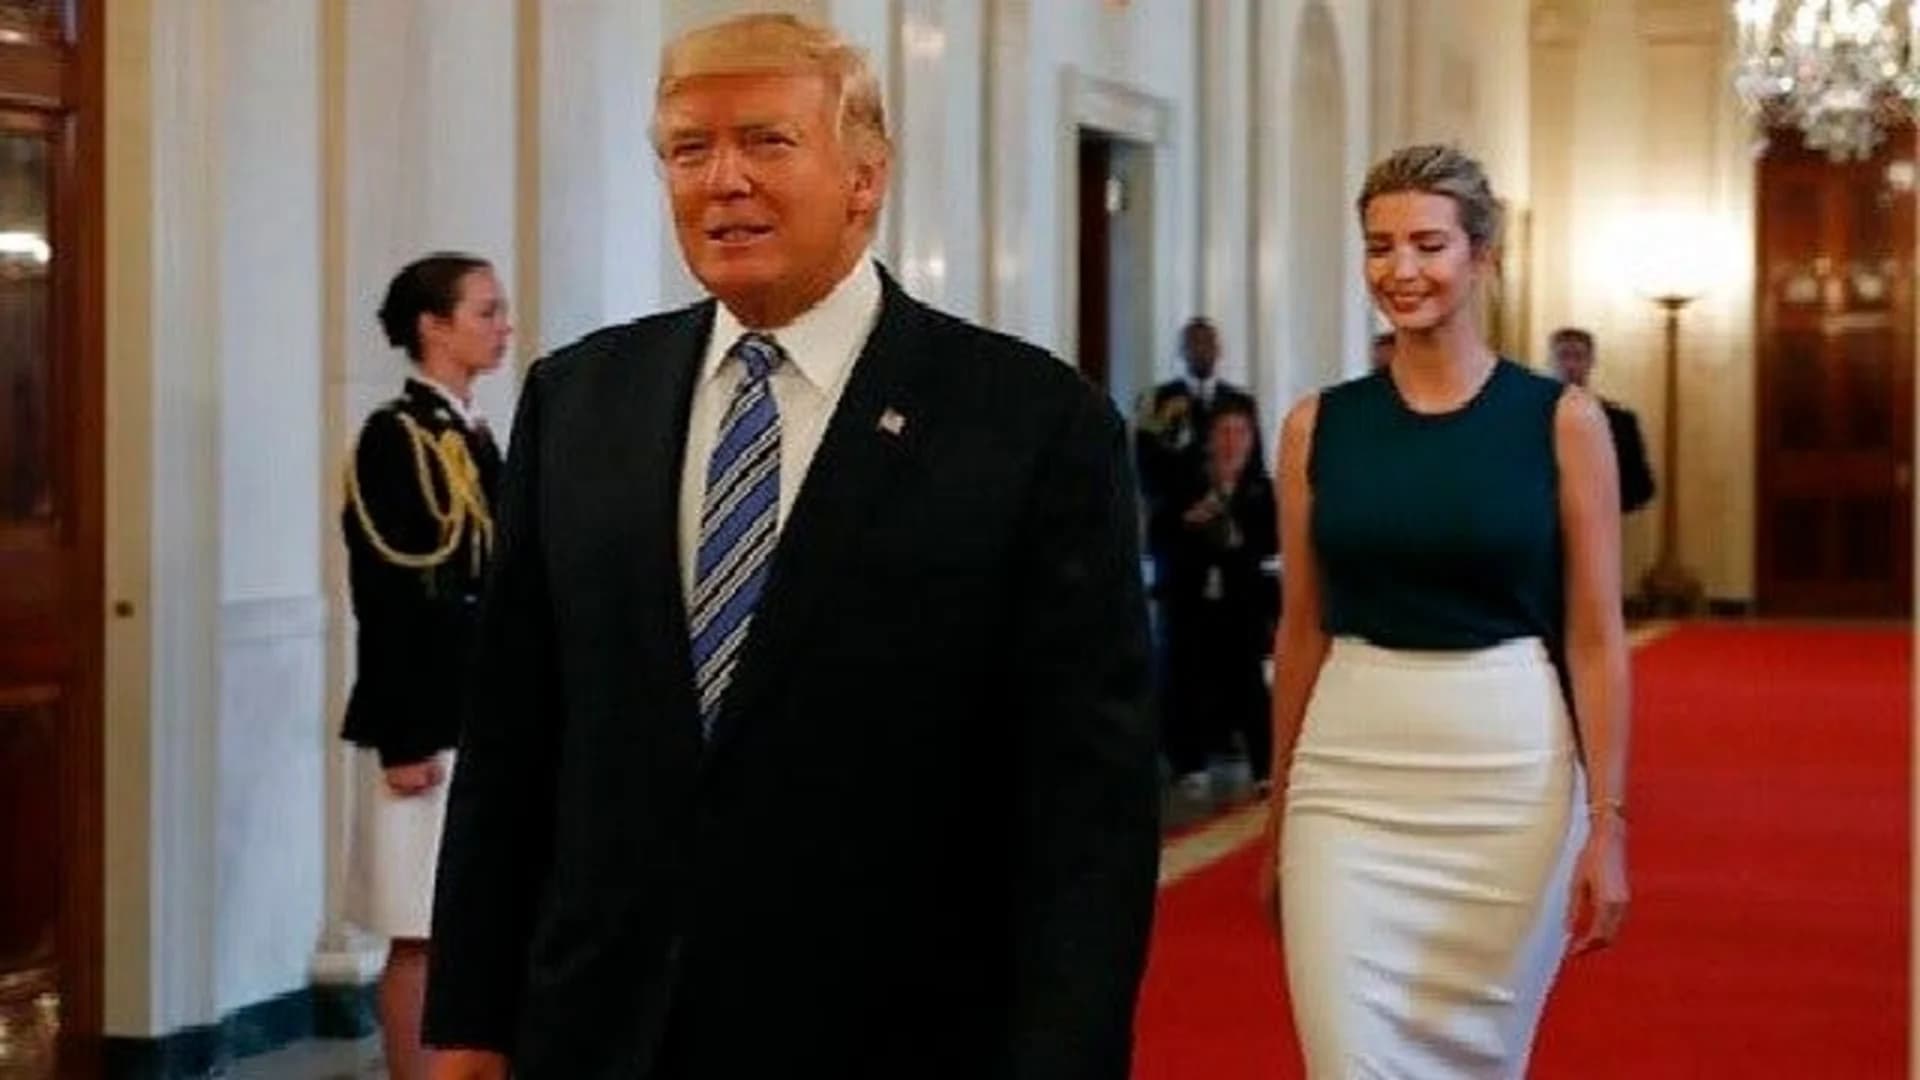 Trump denies he called White House a 'dump'